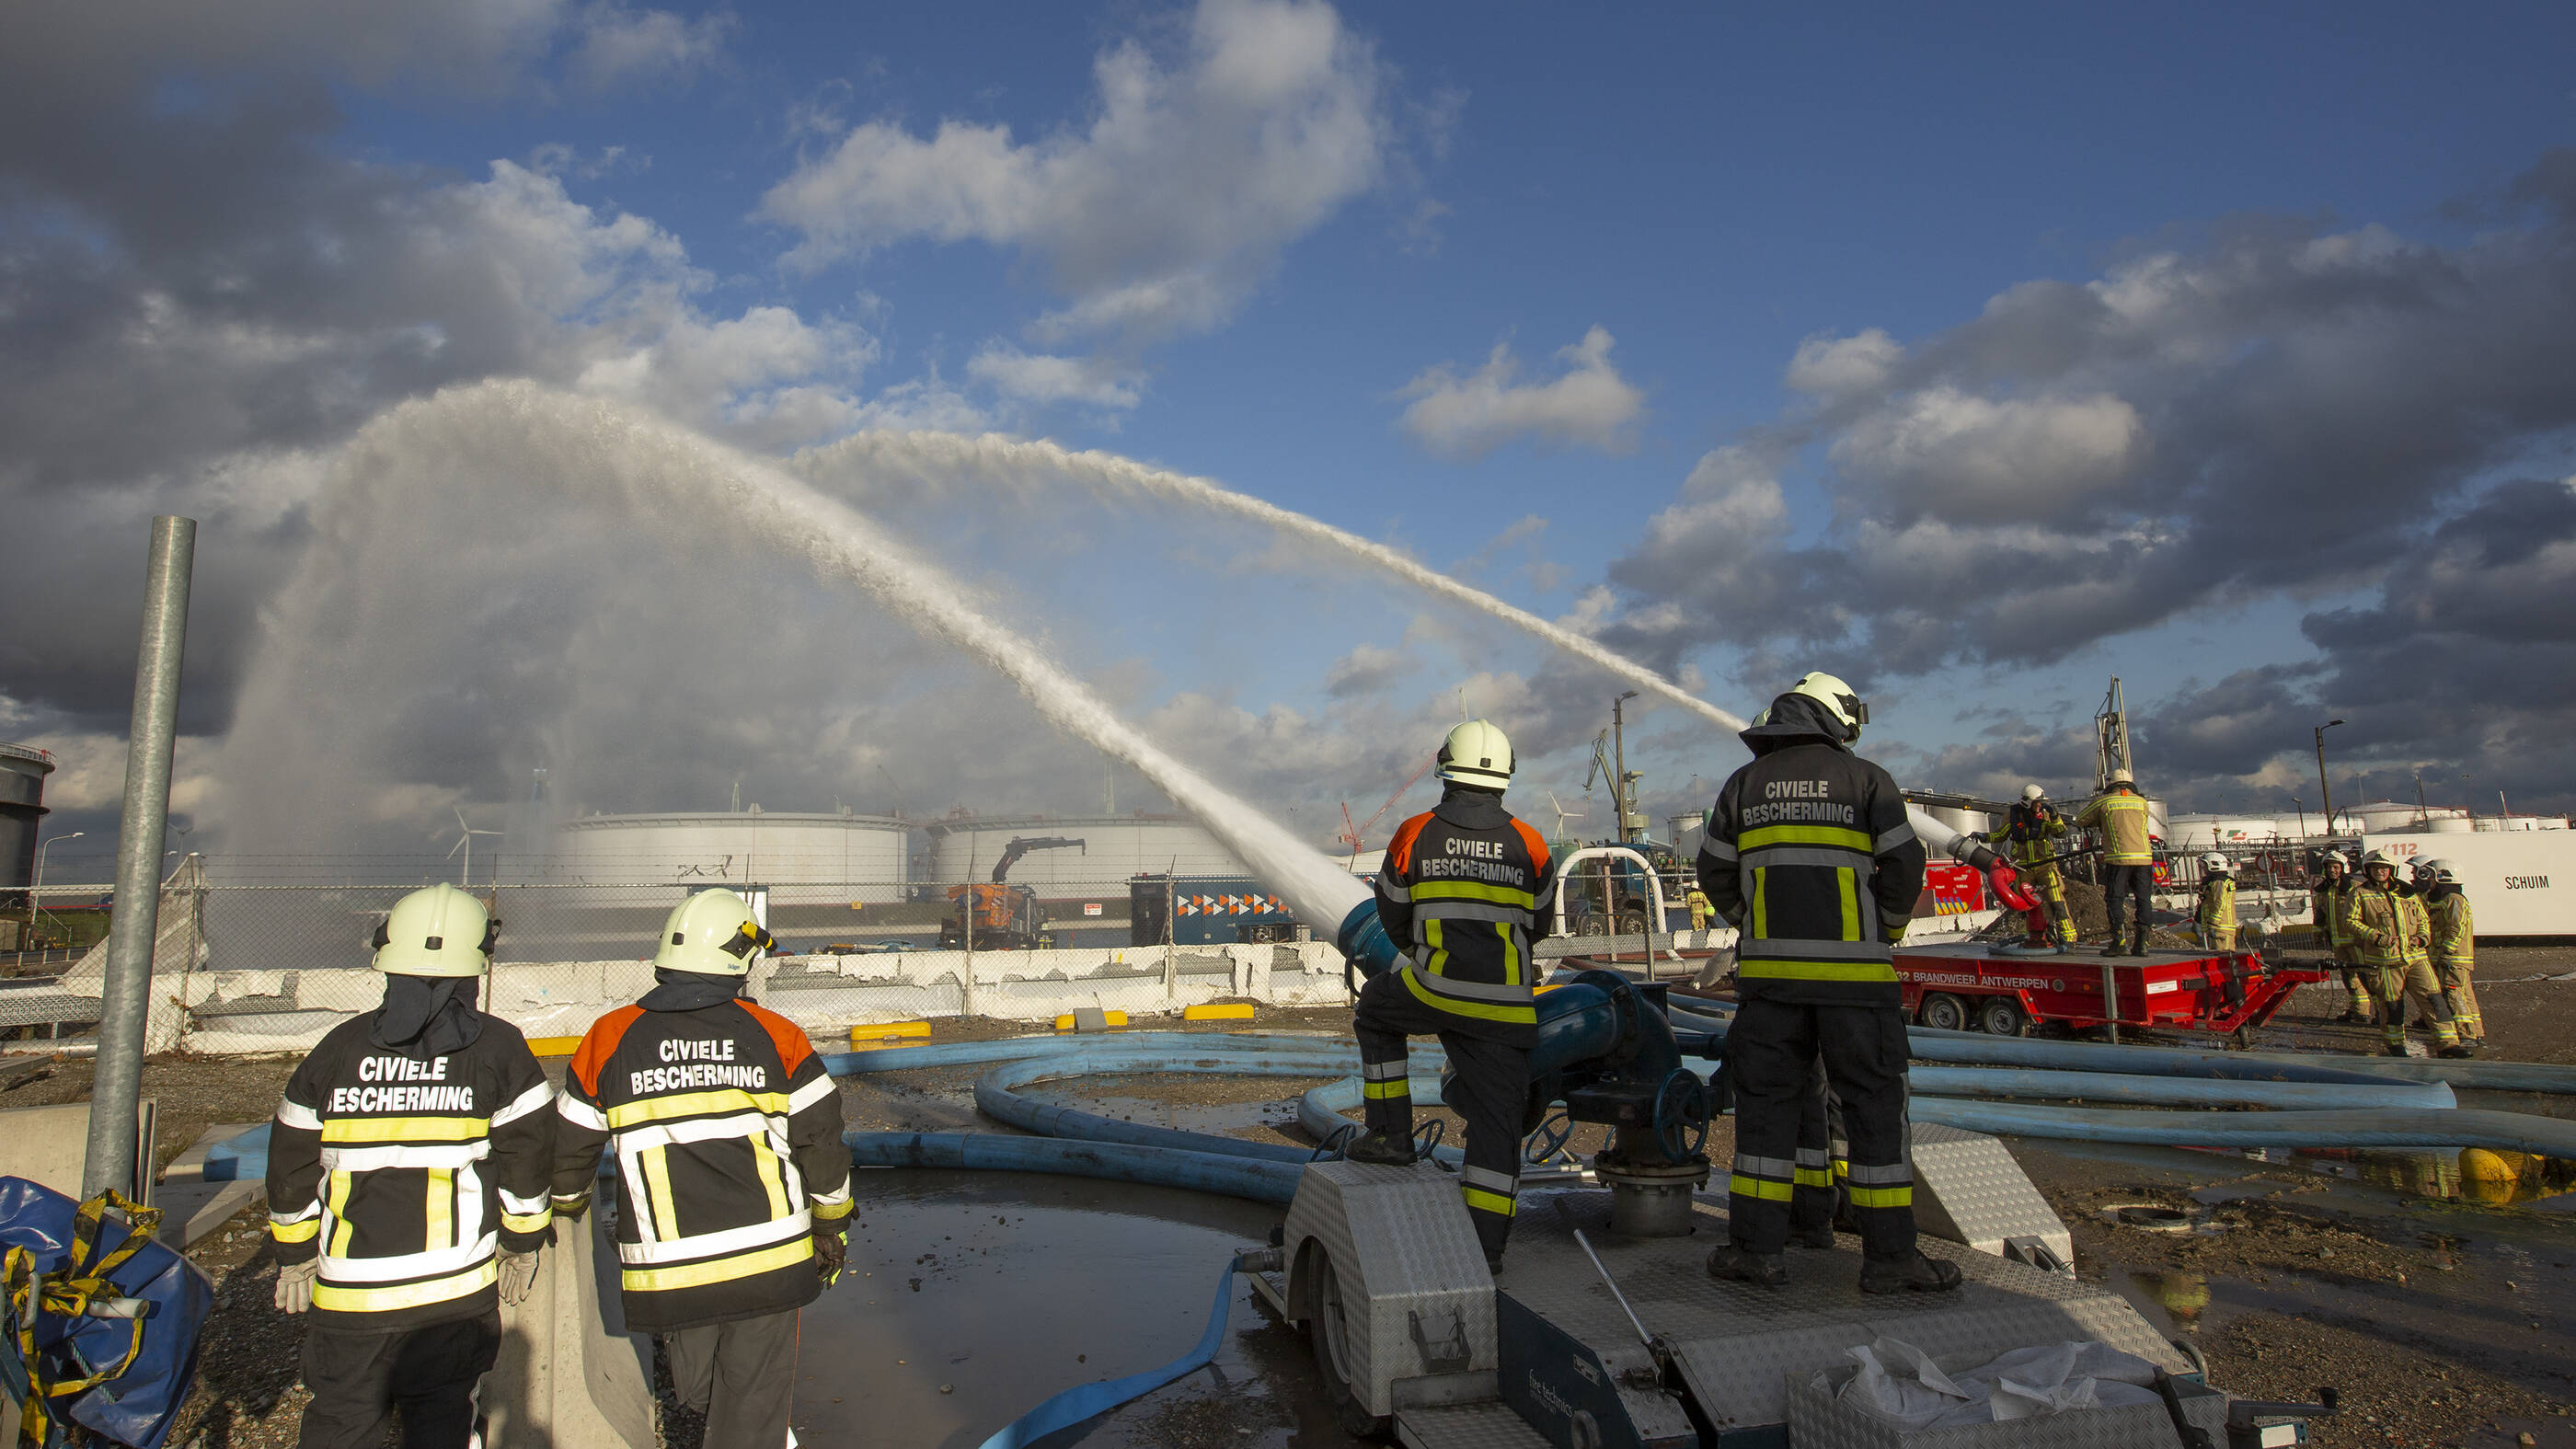 Civiele Bescherming en Brandweer Zone Antwerpen samen aan de slag tijdens noodoefening bij ExxonMobil